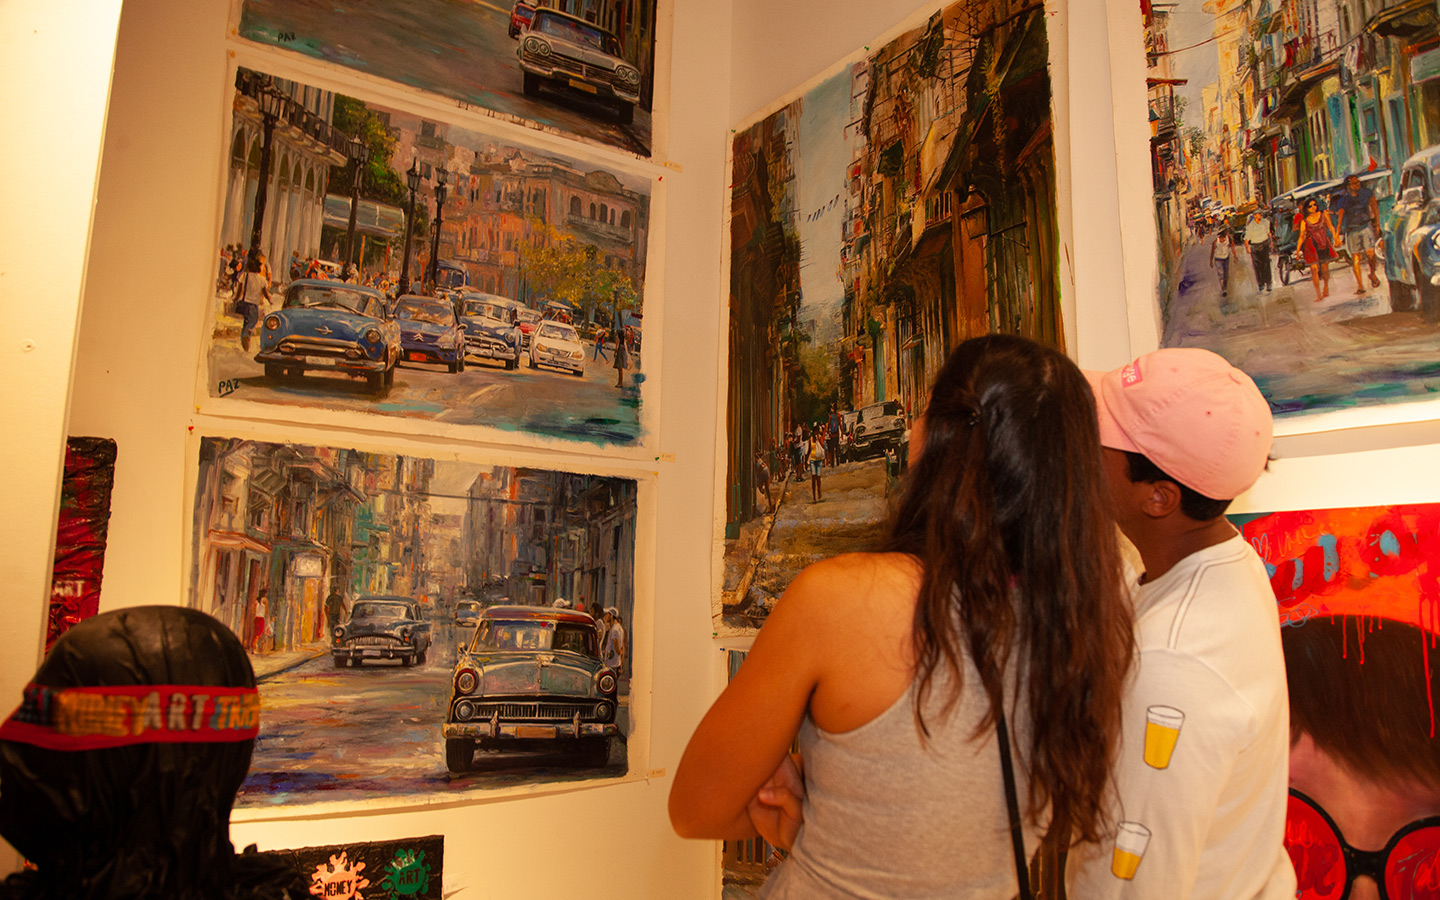 El Fresco Studio in Little Havana celebrating 10 years with arts